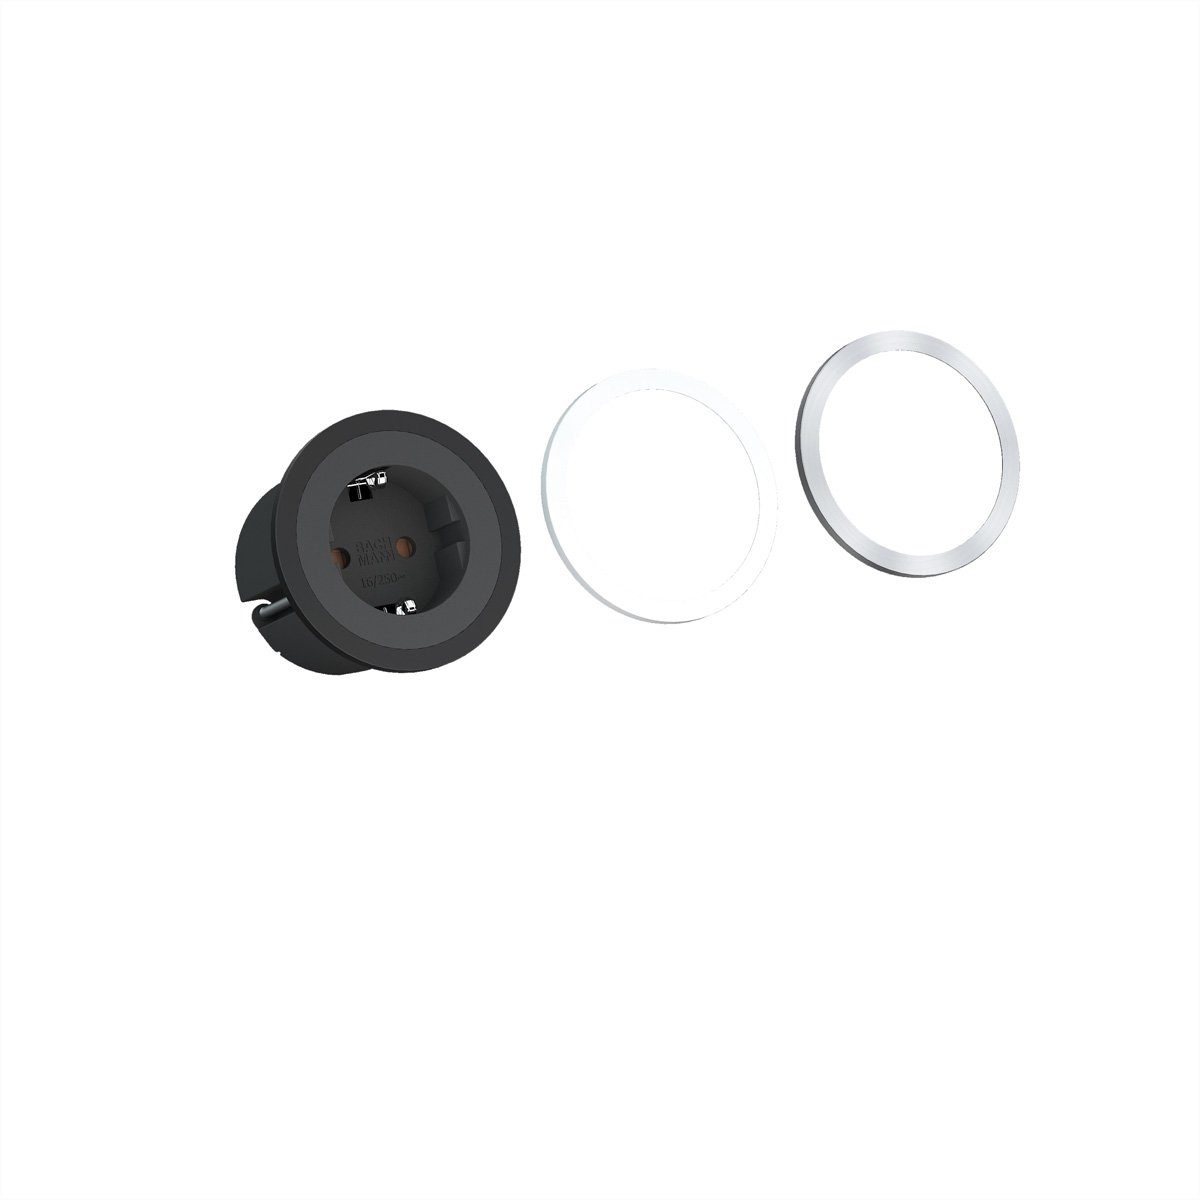 Bachmann PIX 1x Schutzkontakt Steckdosenleiste (Kabellänge 2 m), mit Schutzkontakt und Zierringen in Weiß, Schwarz und Edelstahloptik